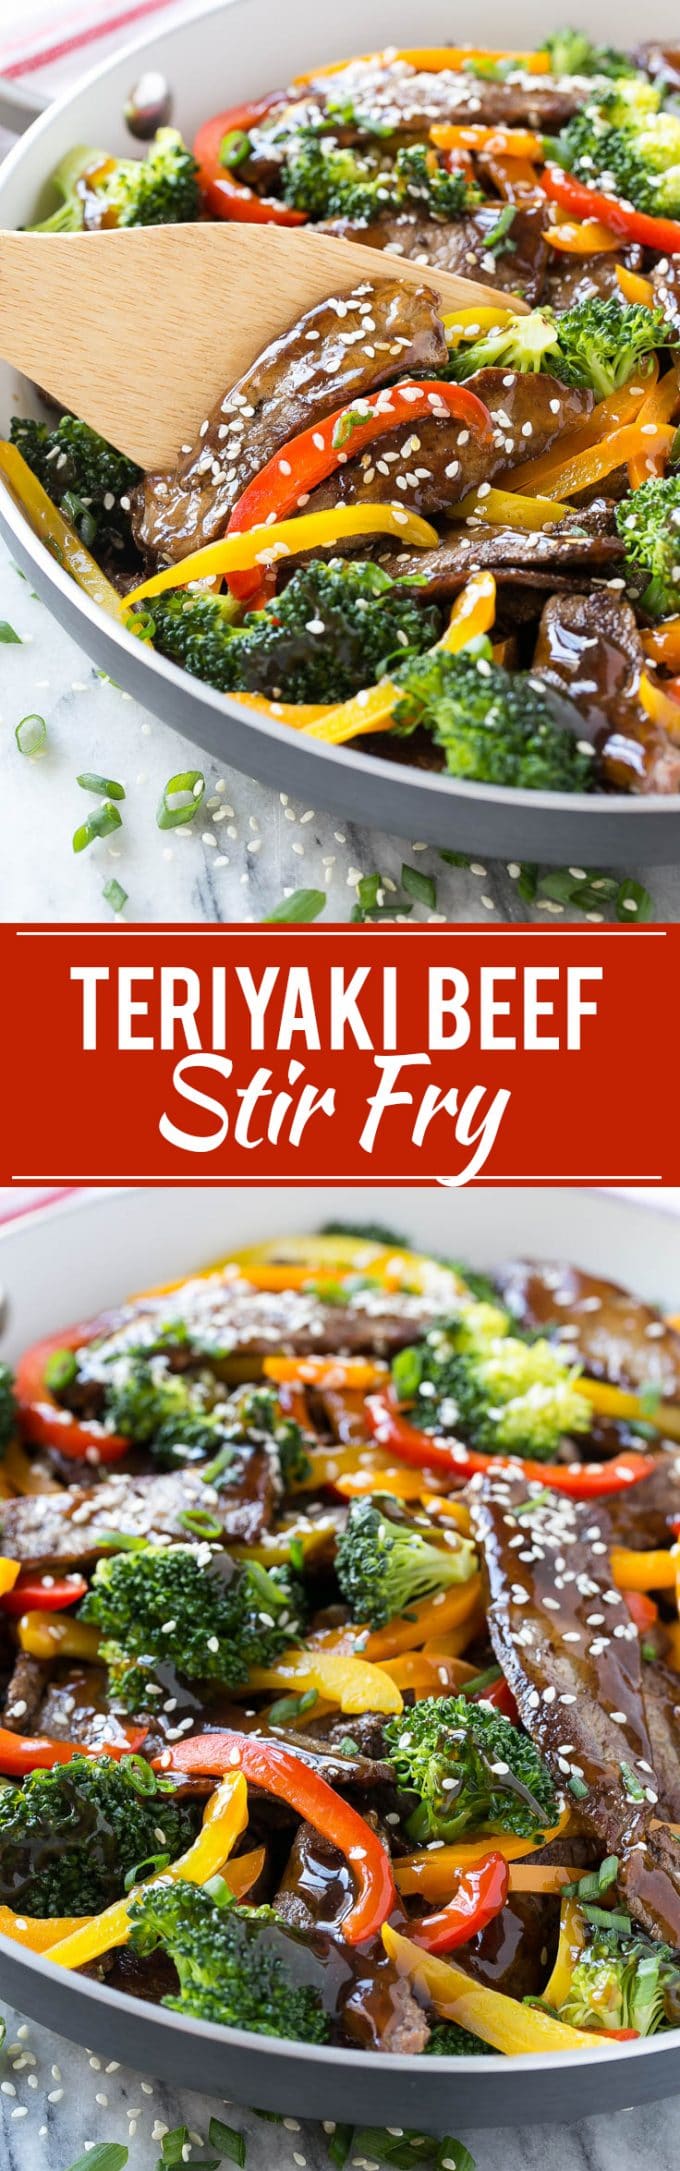 Teriyaki Beef Stir Fry Recipe | Beef Stir Fry | Beef Teriyaki #beef #stirfry #broccoli #dinner #dinneratthezoo